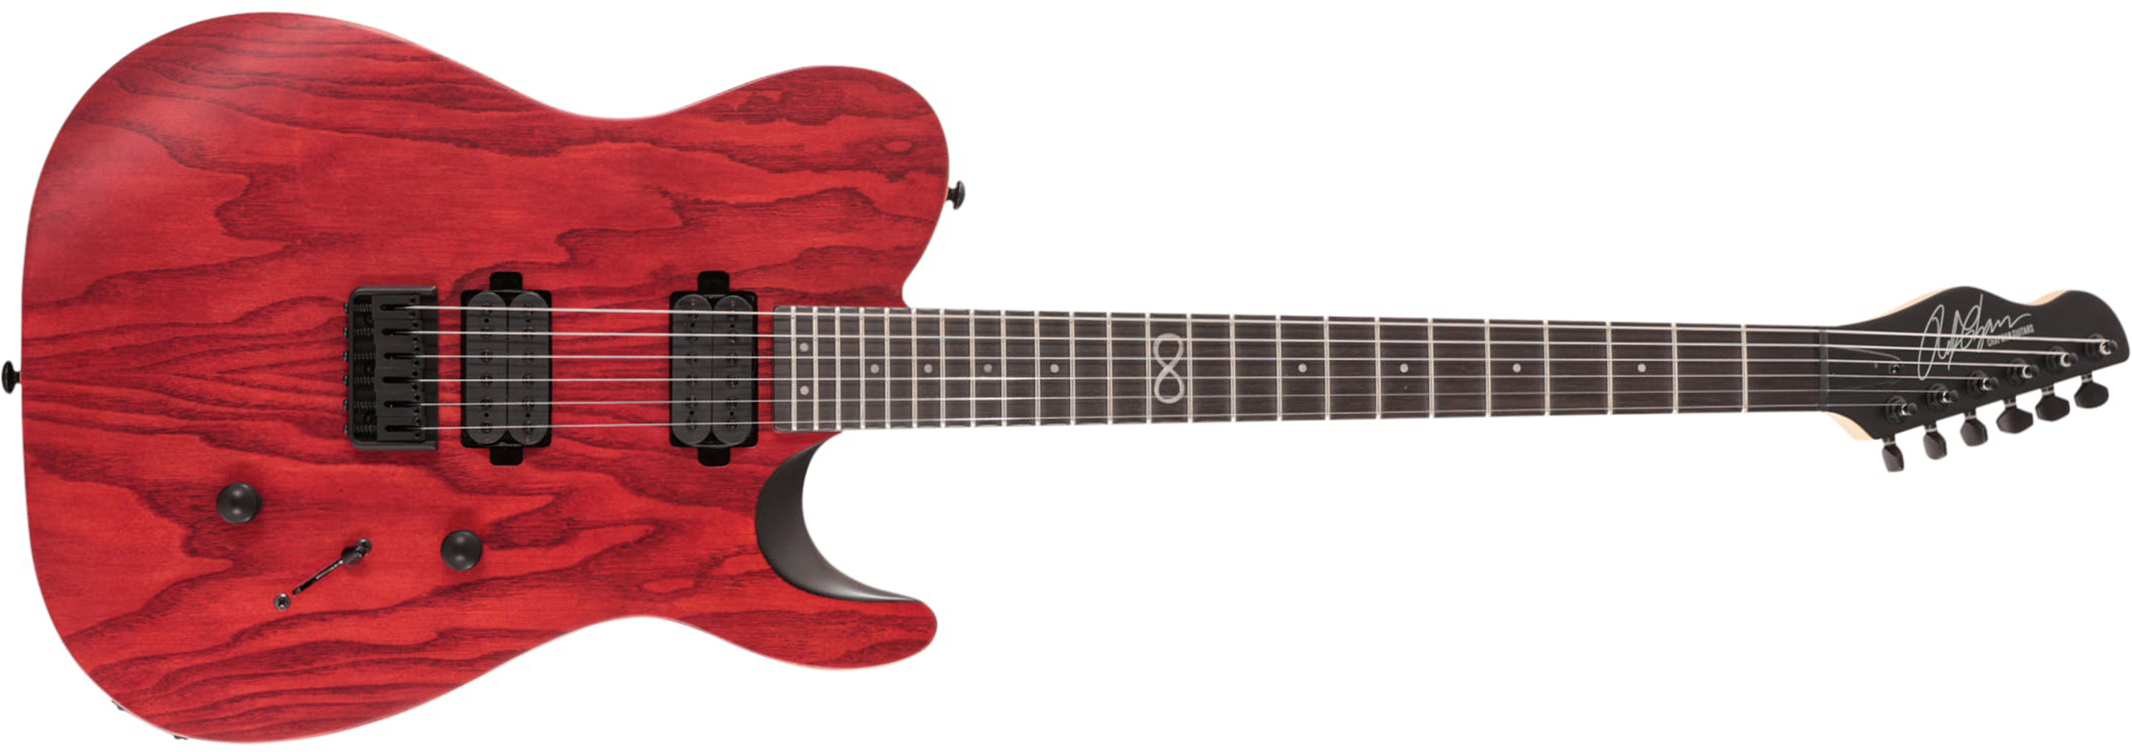 Chapman Guitars Ml3 Modern 2022 Standard 2h Ht Eb - Deep Red Satin - Televorm elektrische gitaar - Main picture